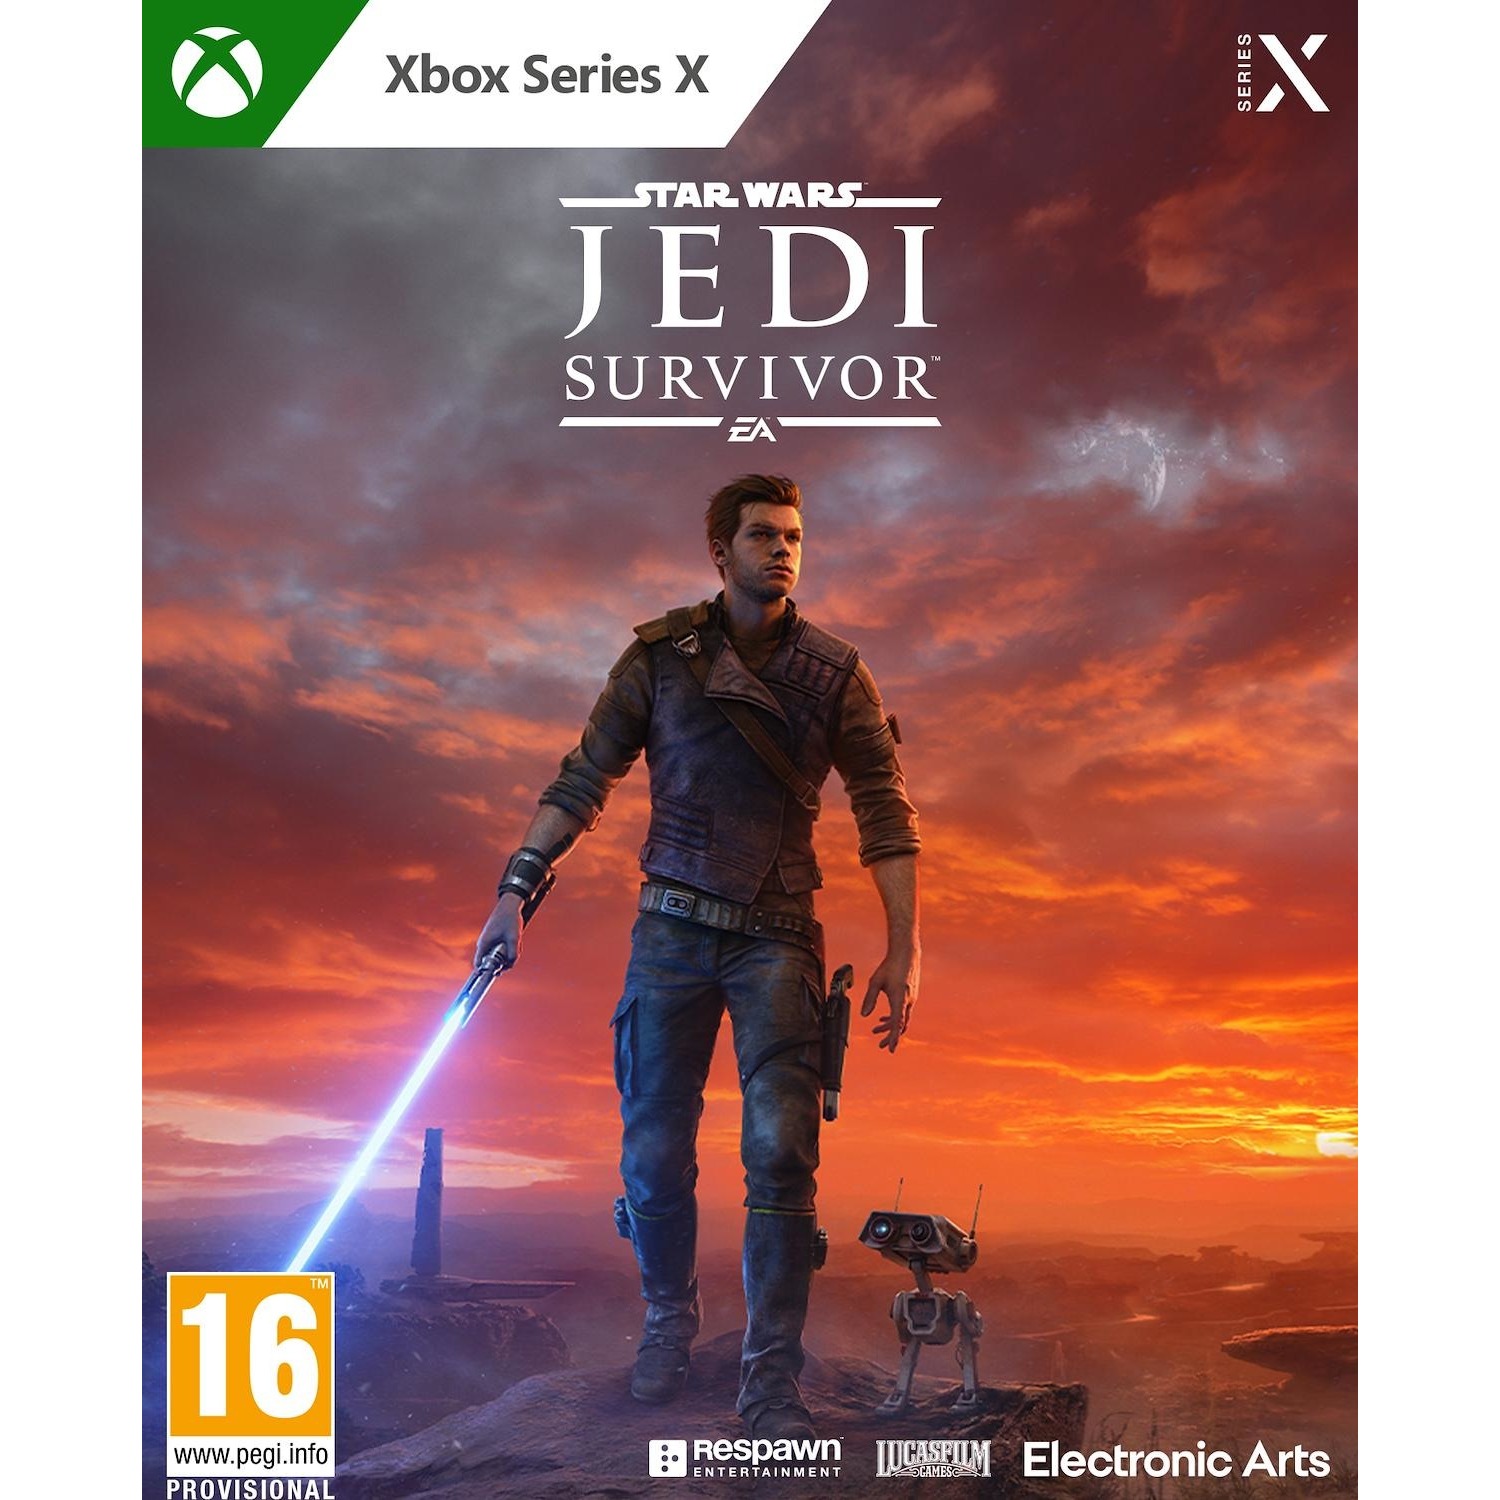 Immagine per Gioco XBOX Series X Star Wars Jedi: Survivor da DIMOStore